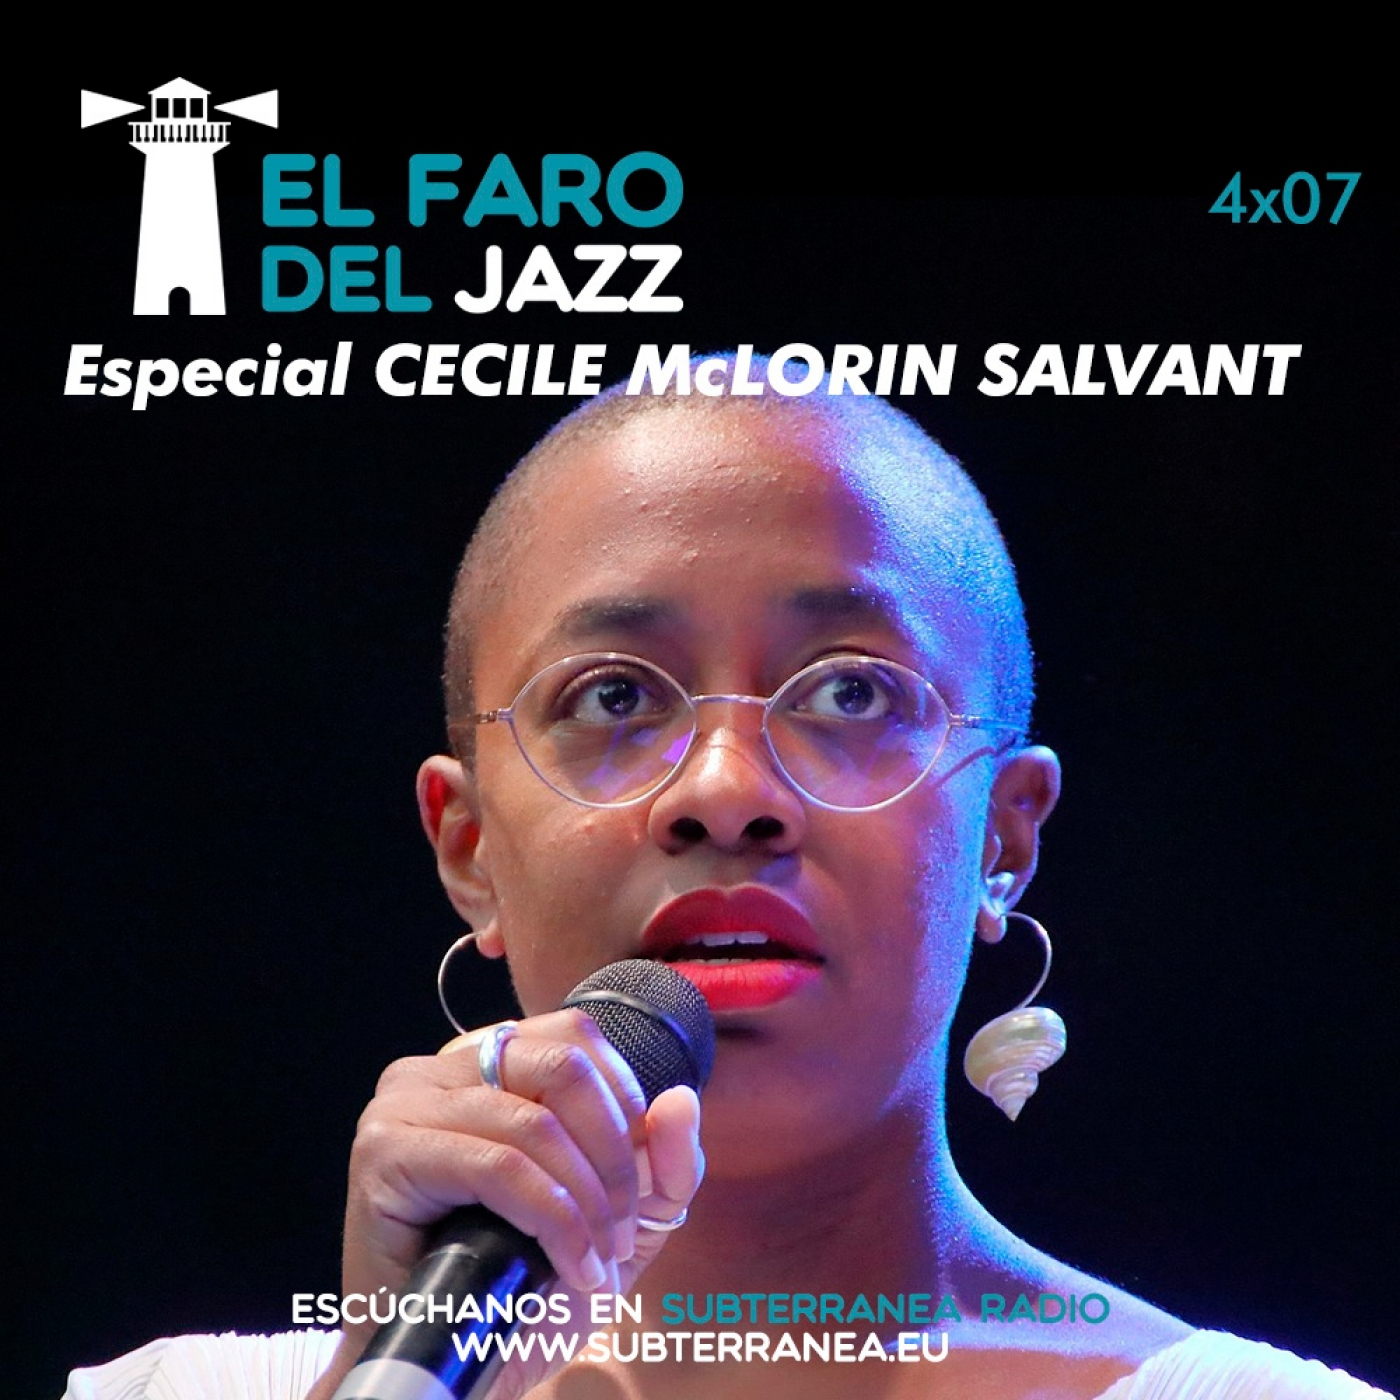 El faro del jazz - 4x07 - Cecile McLorin Salvant